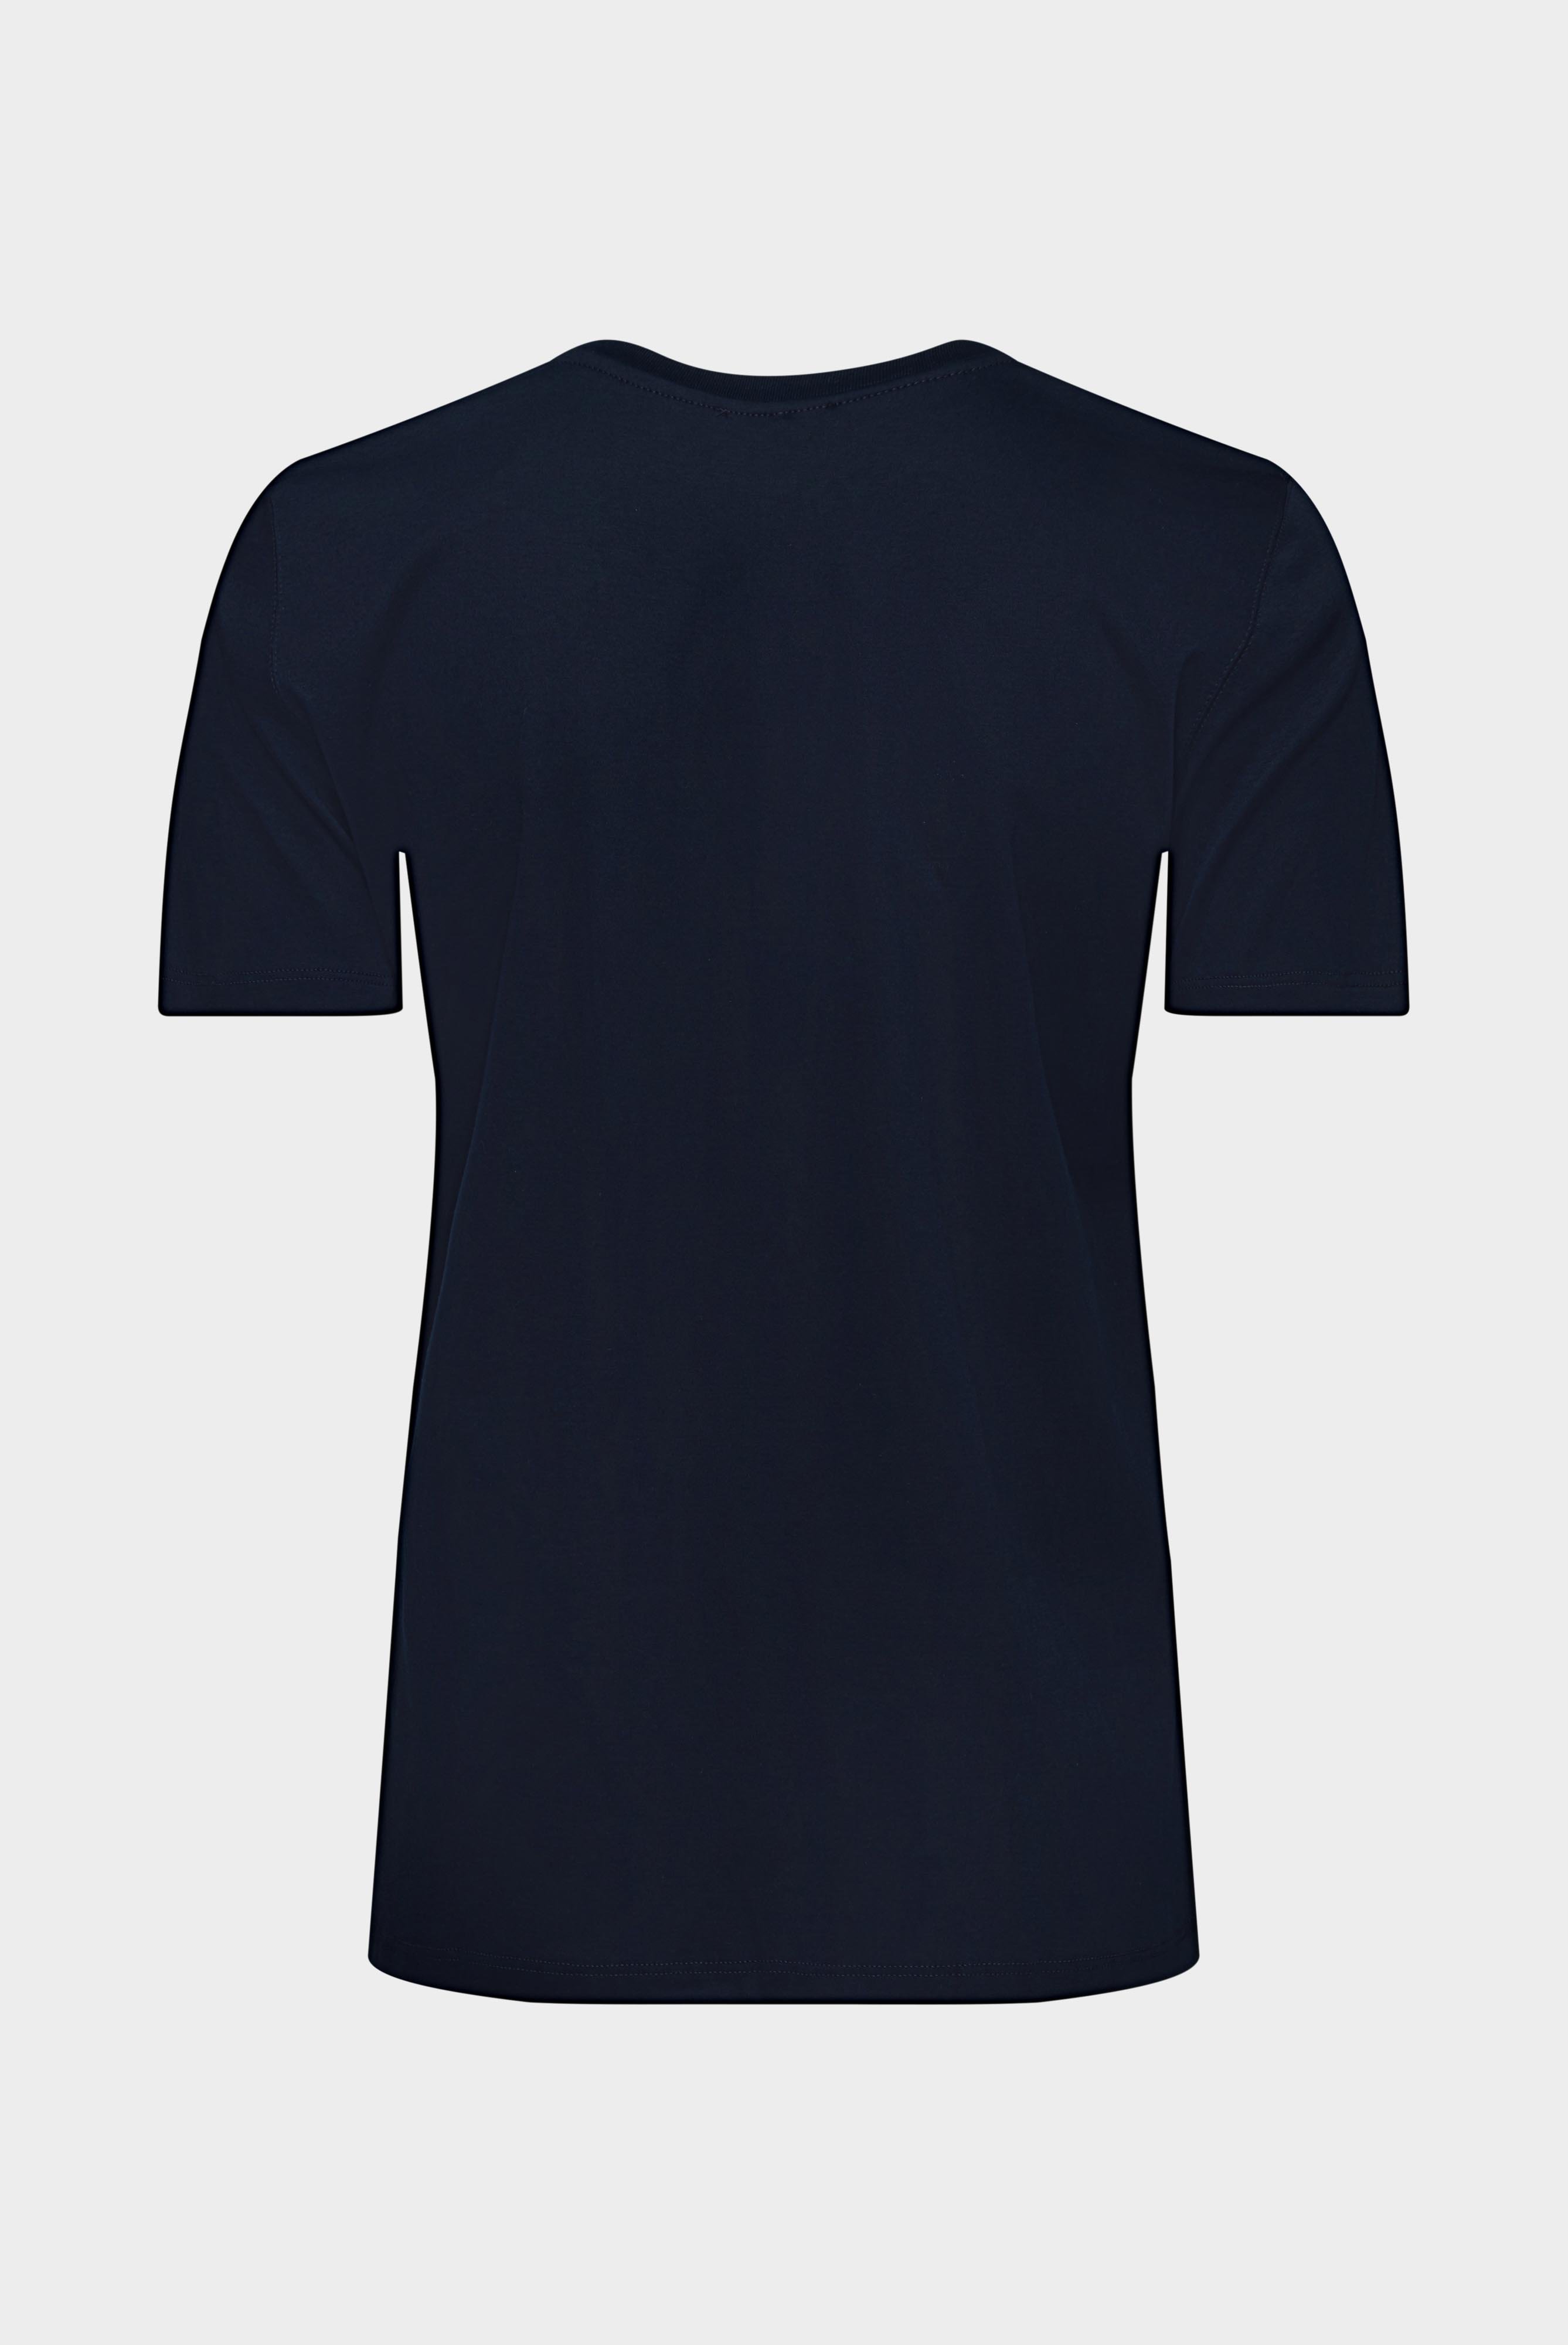 Tops & T-Shirts+Jersey T-Shirt+05.6384.18.180031.790.38